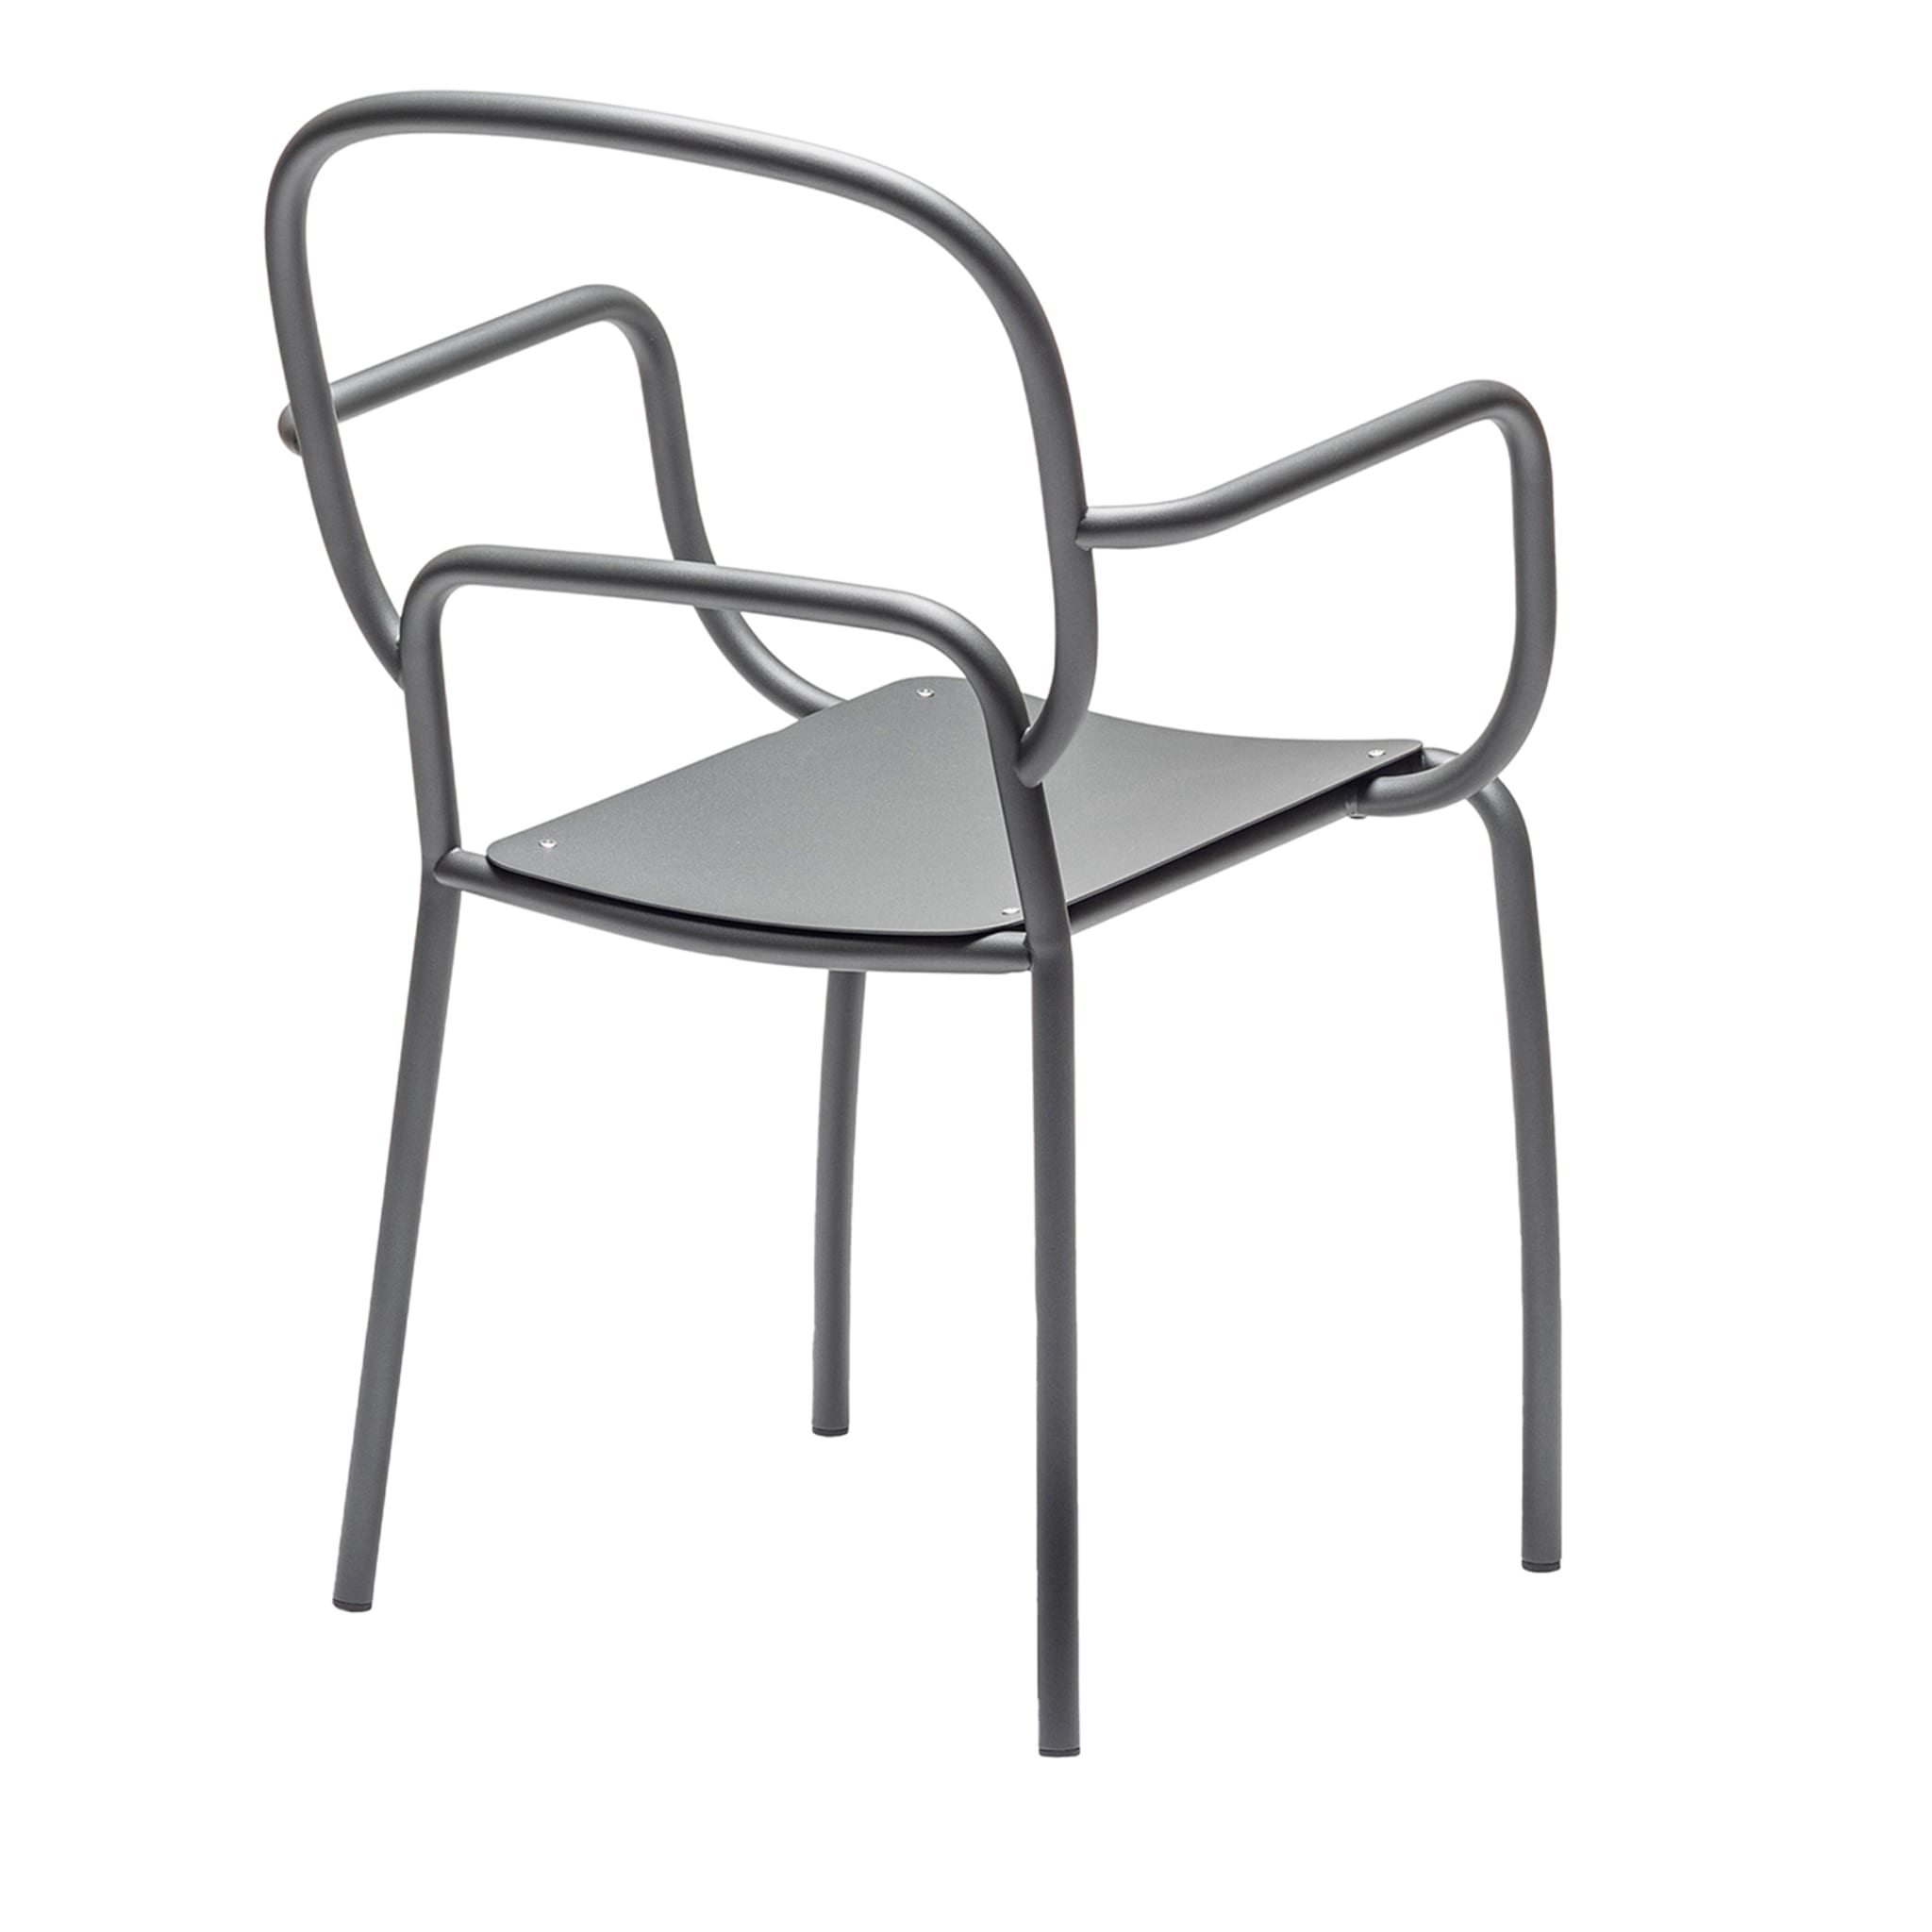 Set of 3 Moyo Gray Chair by Simone Fanciullacci & Antonio De Marco - Main view